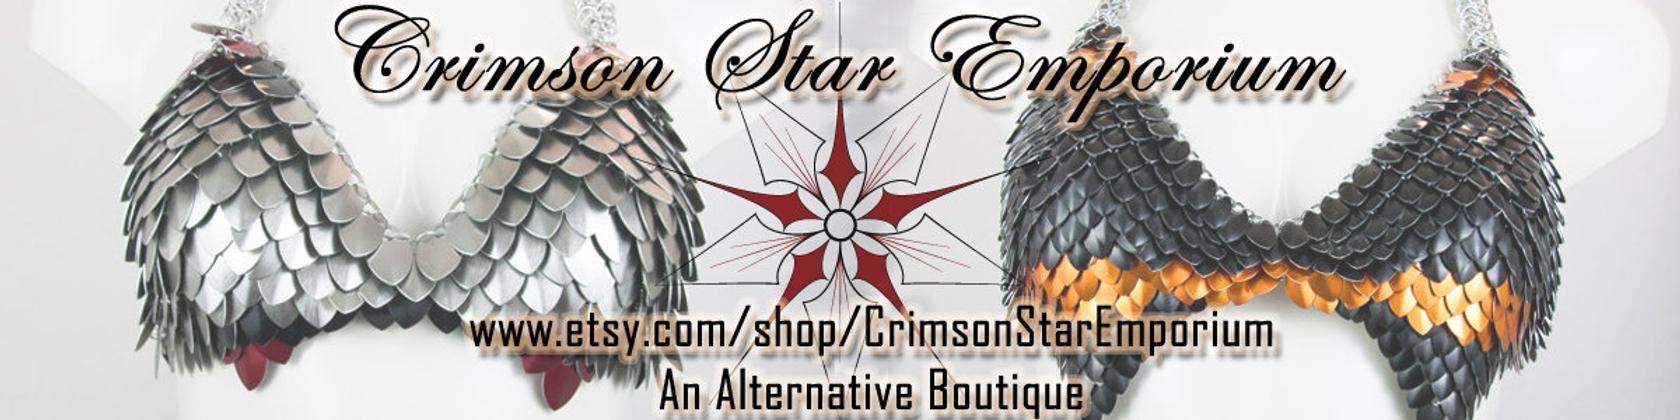 Crimson Star Logo - Crimson Star Emporium by CrimsonStarEmporium on Etsy